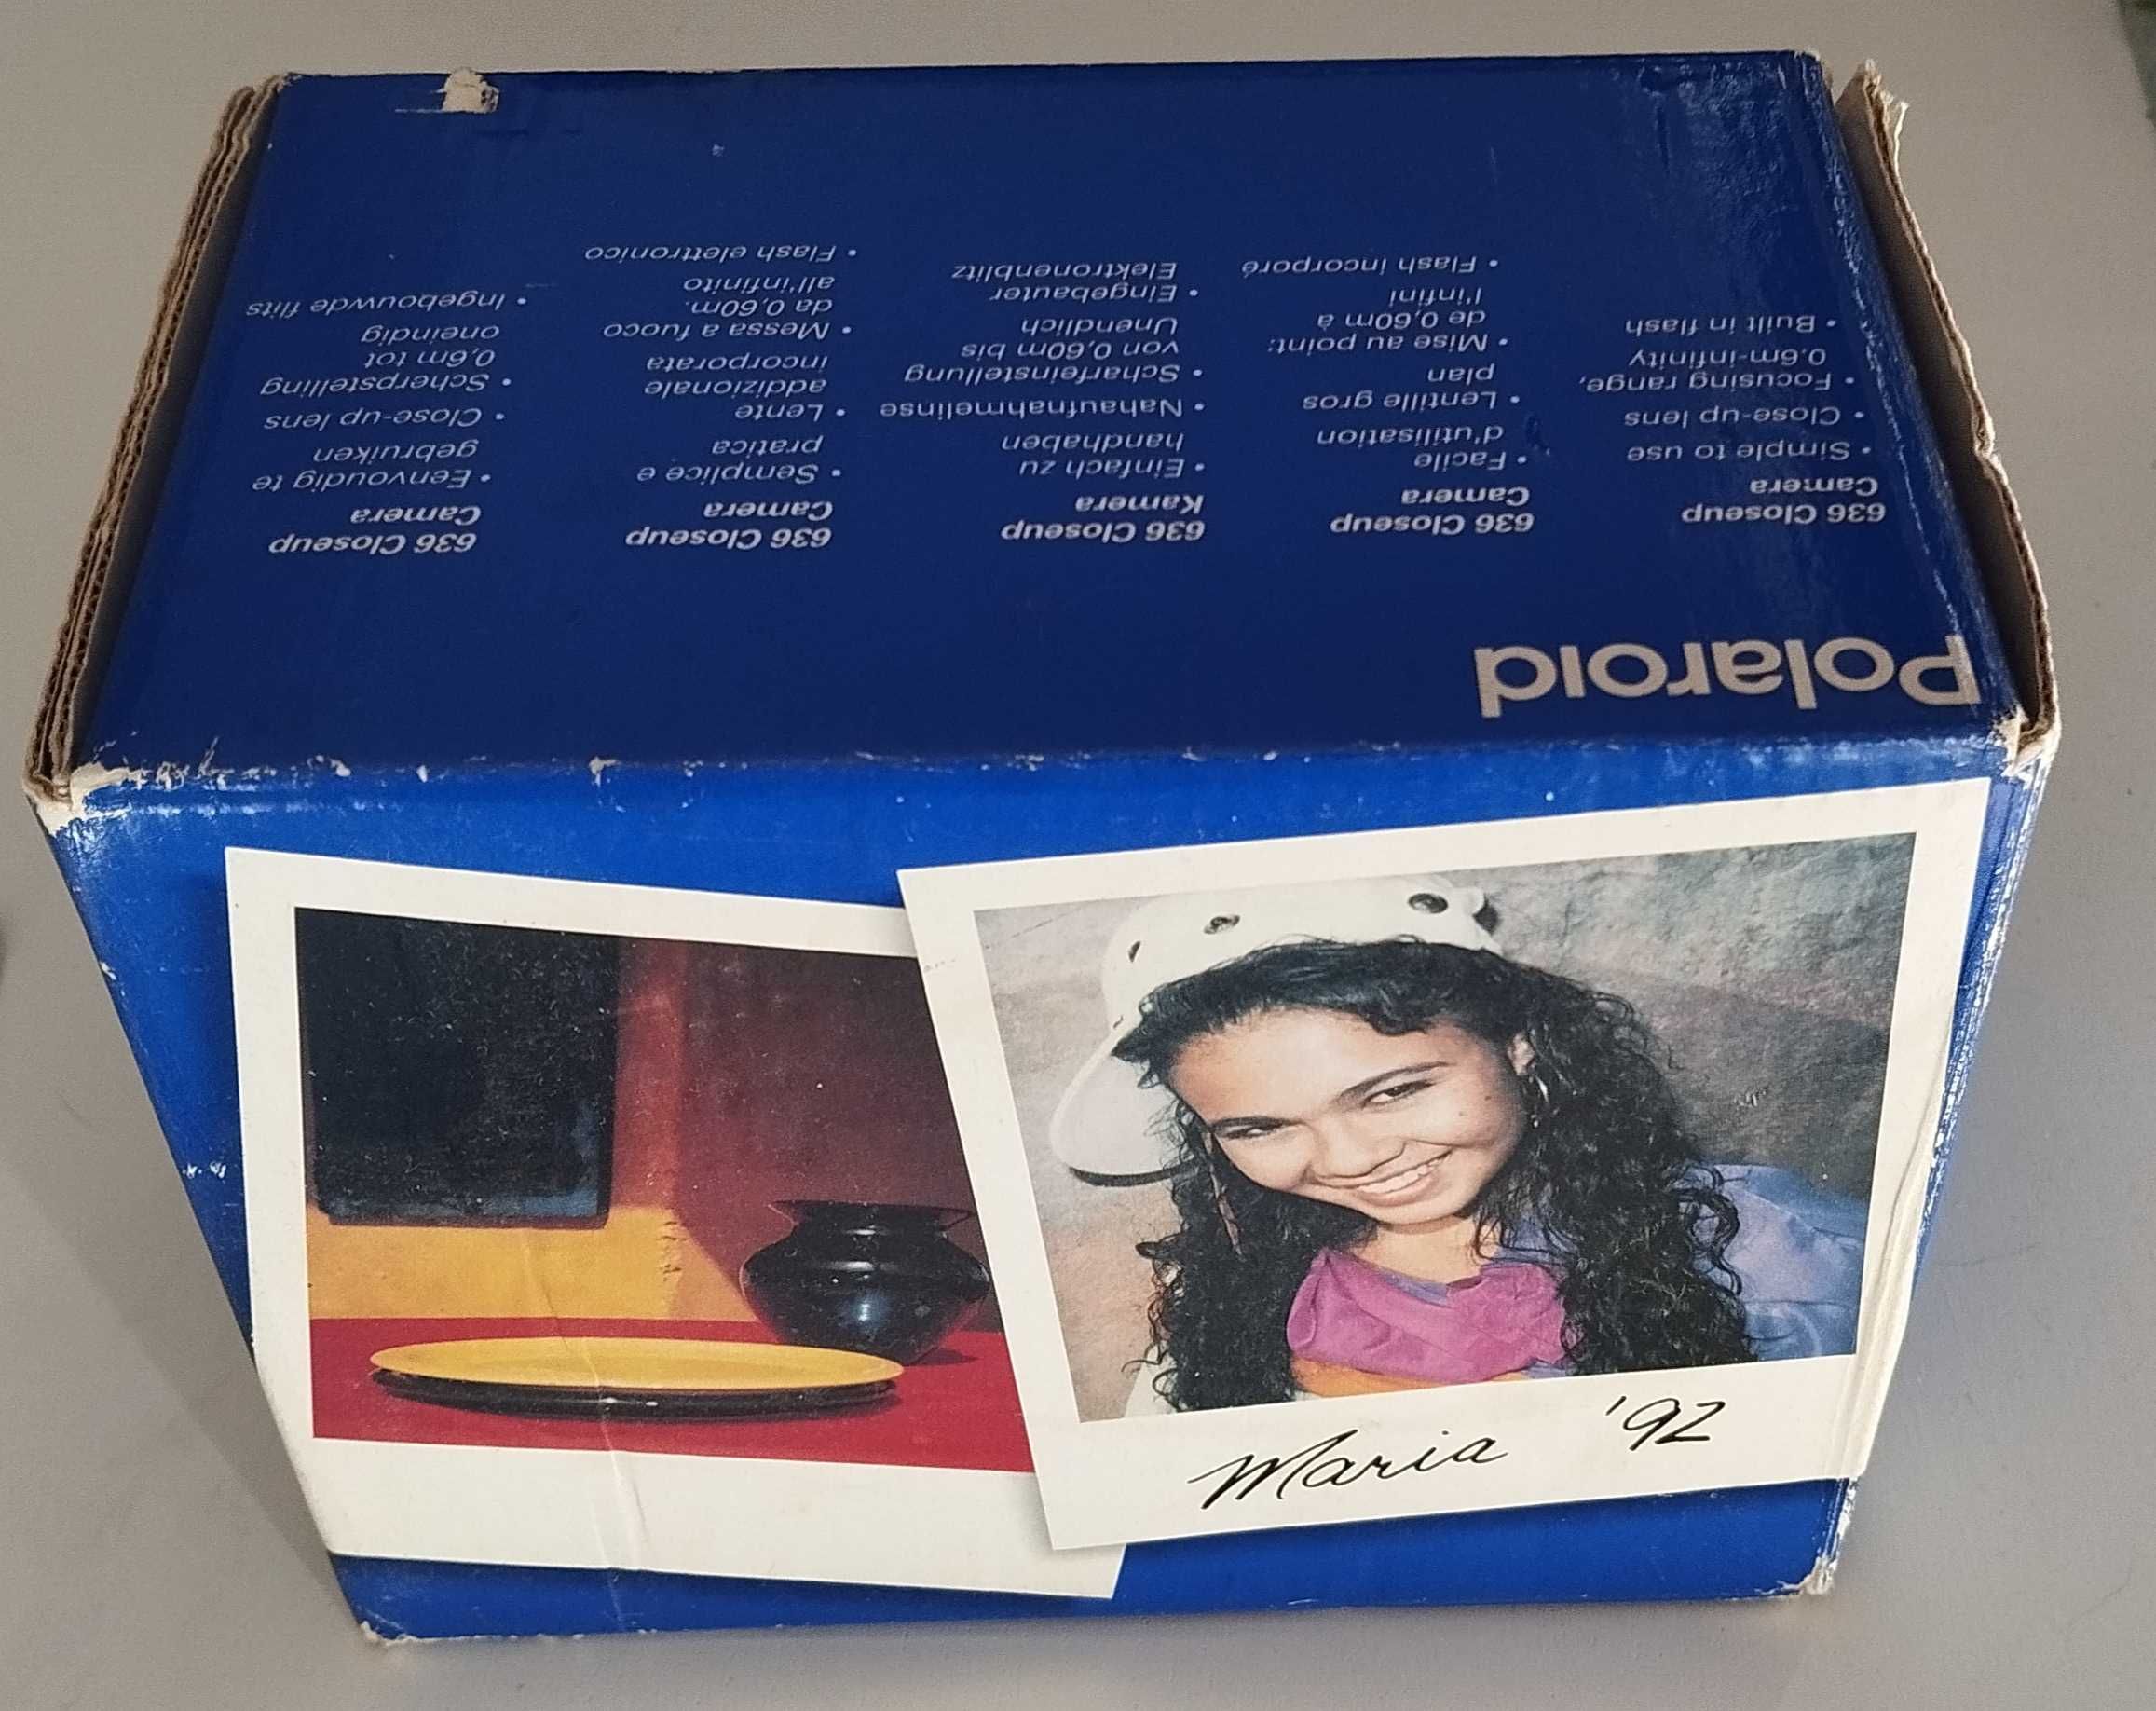 Caixa Polaroid 636 close up